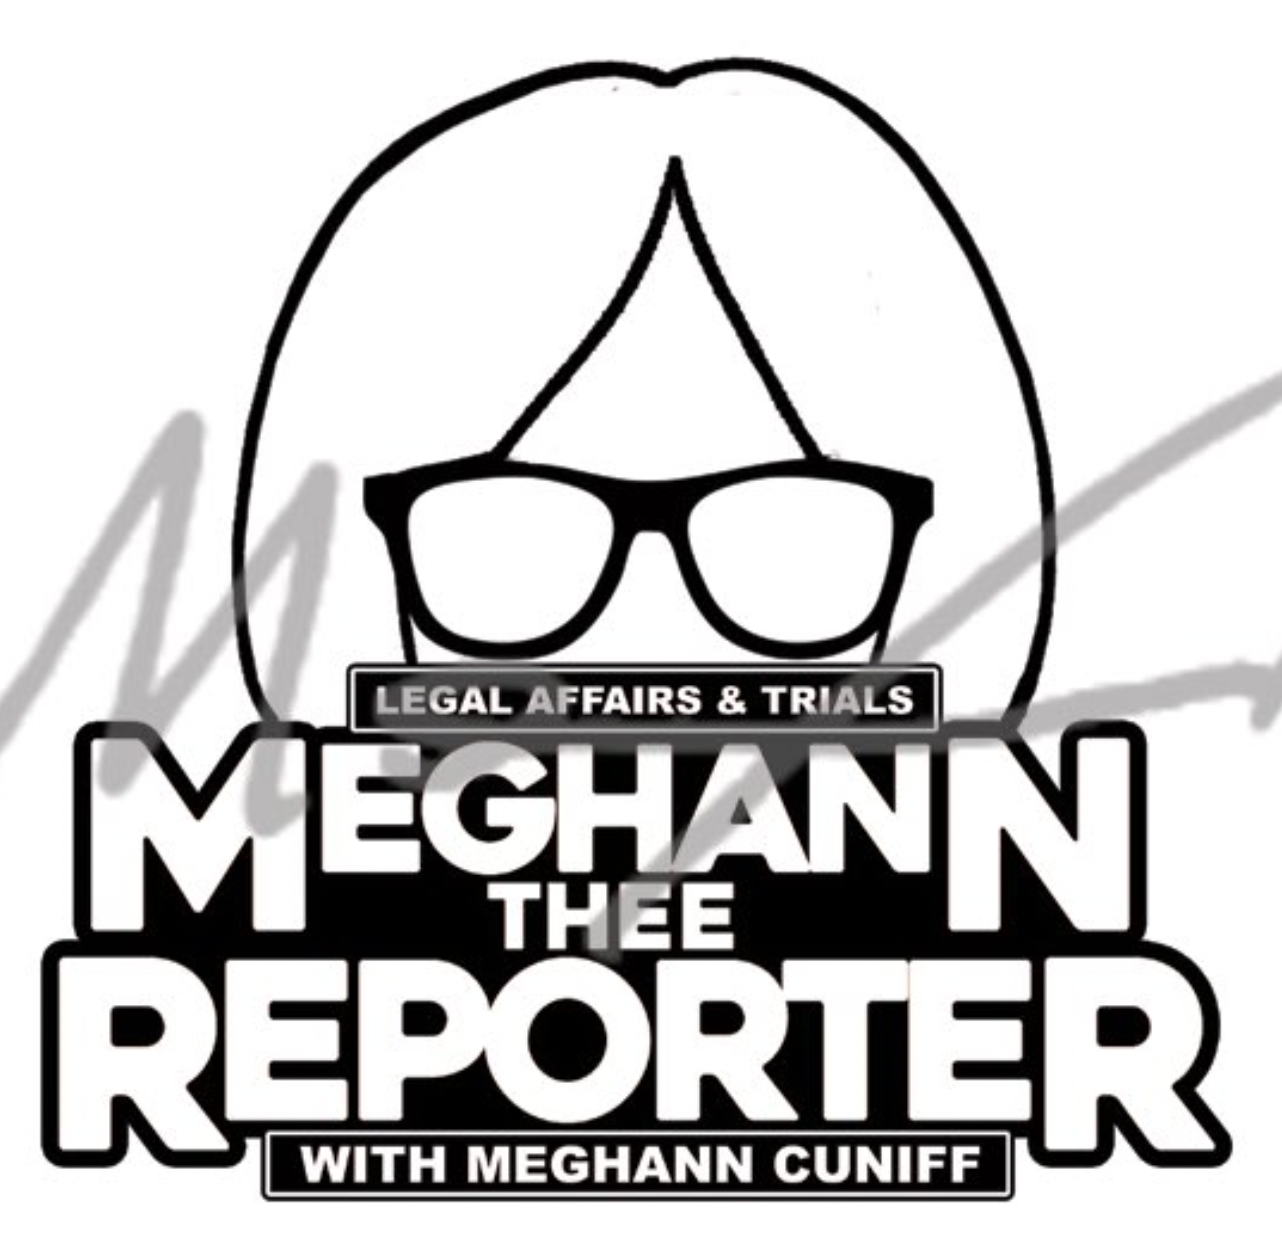 Meghann Thee Reporter Cuniff STICKER